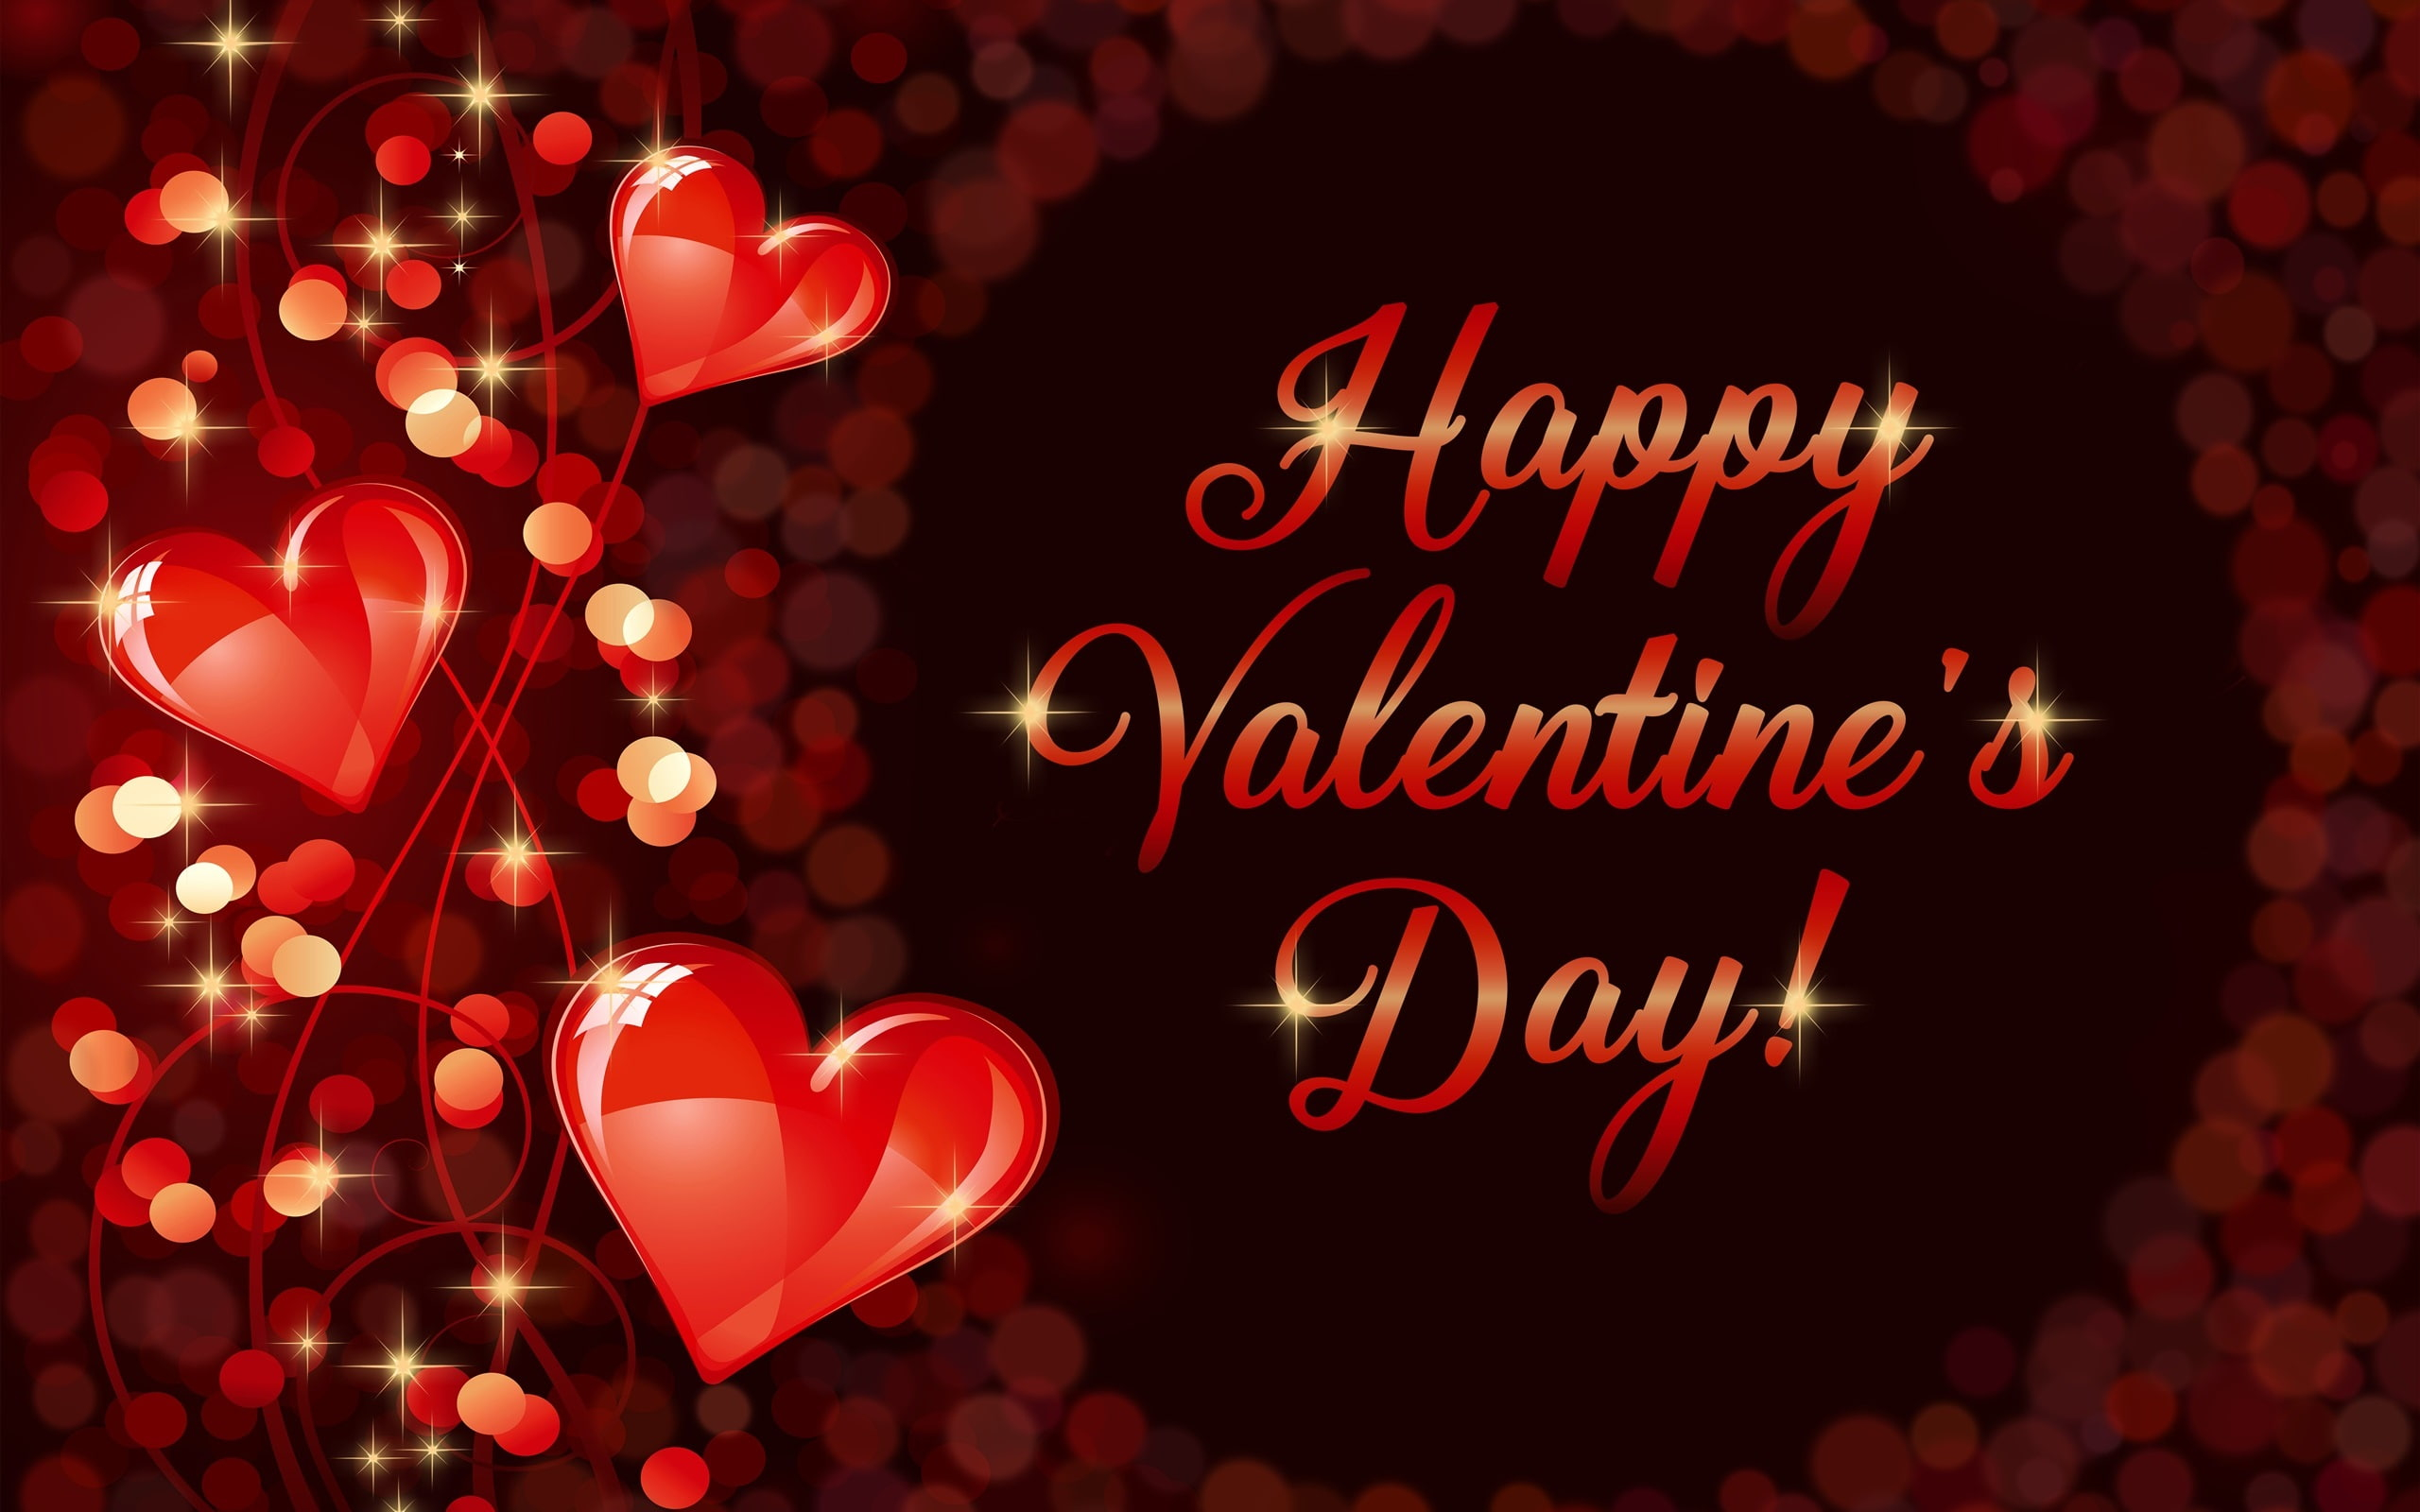 Happy Valentine's Day, romantic, love, hearts wallpaper